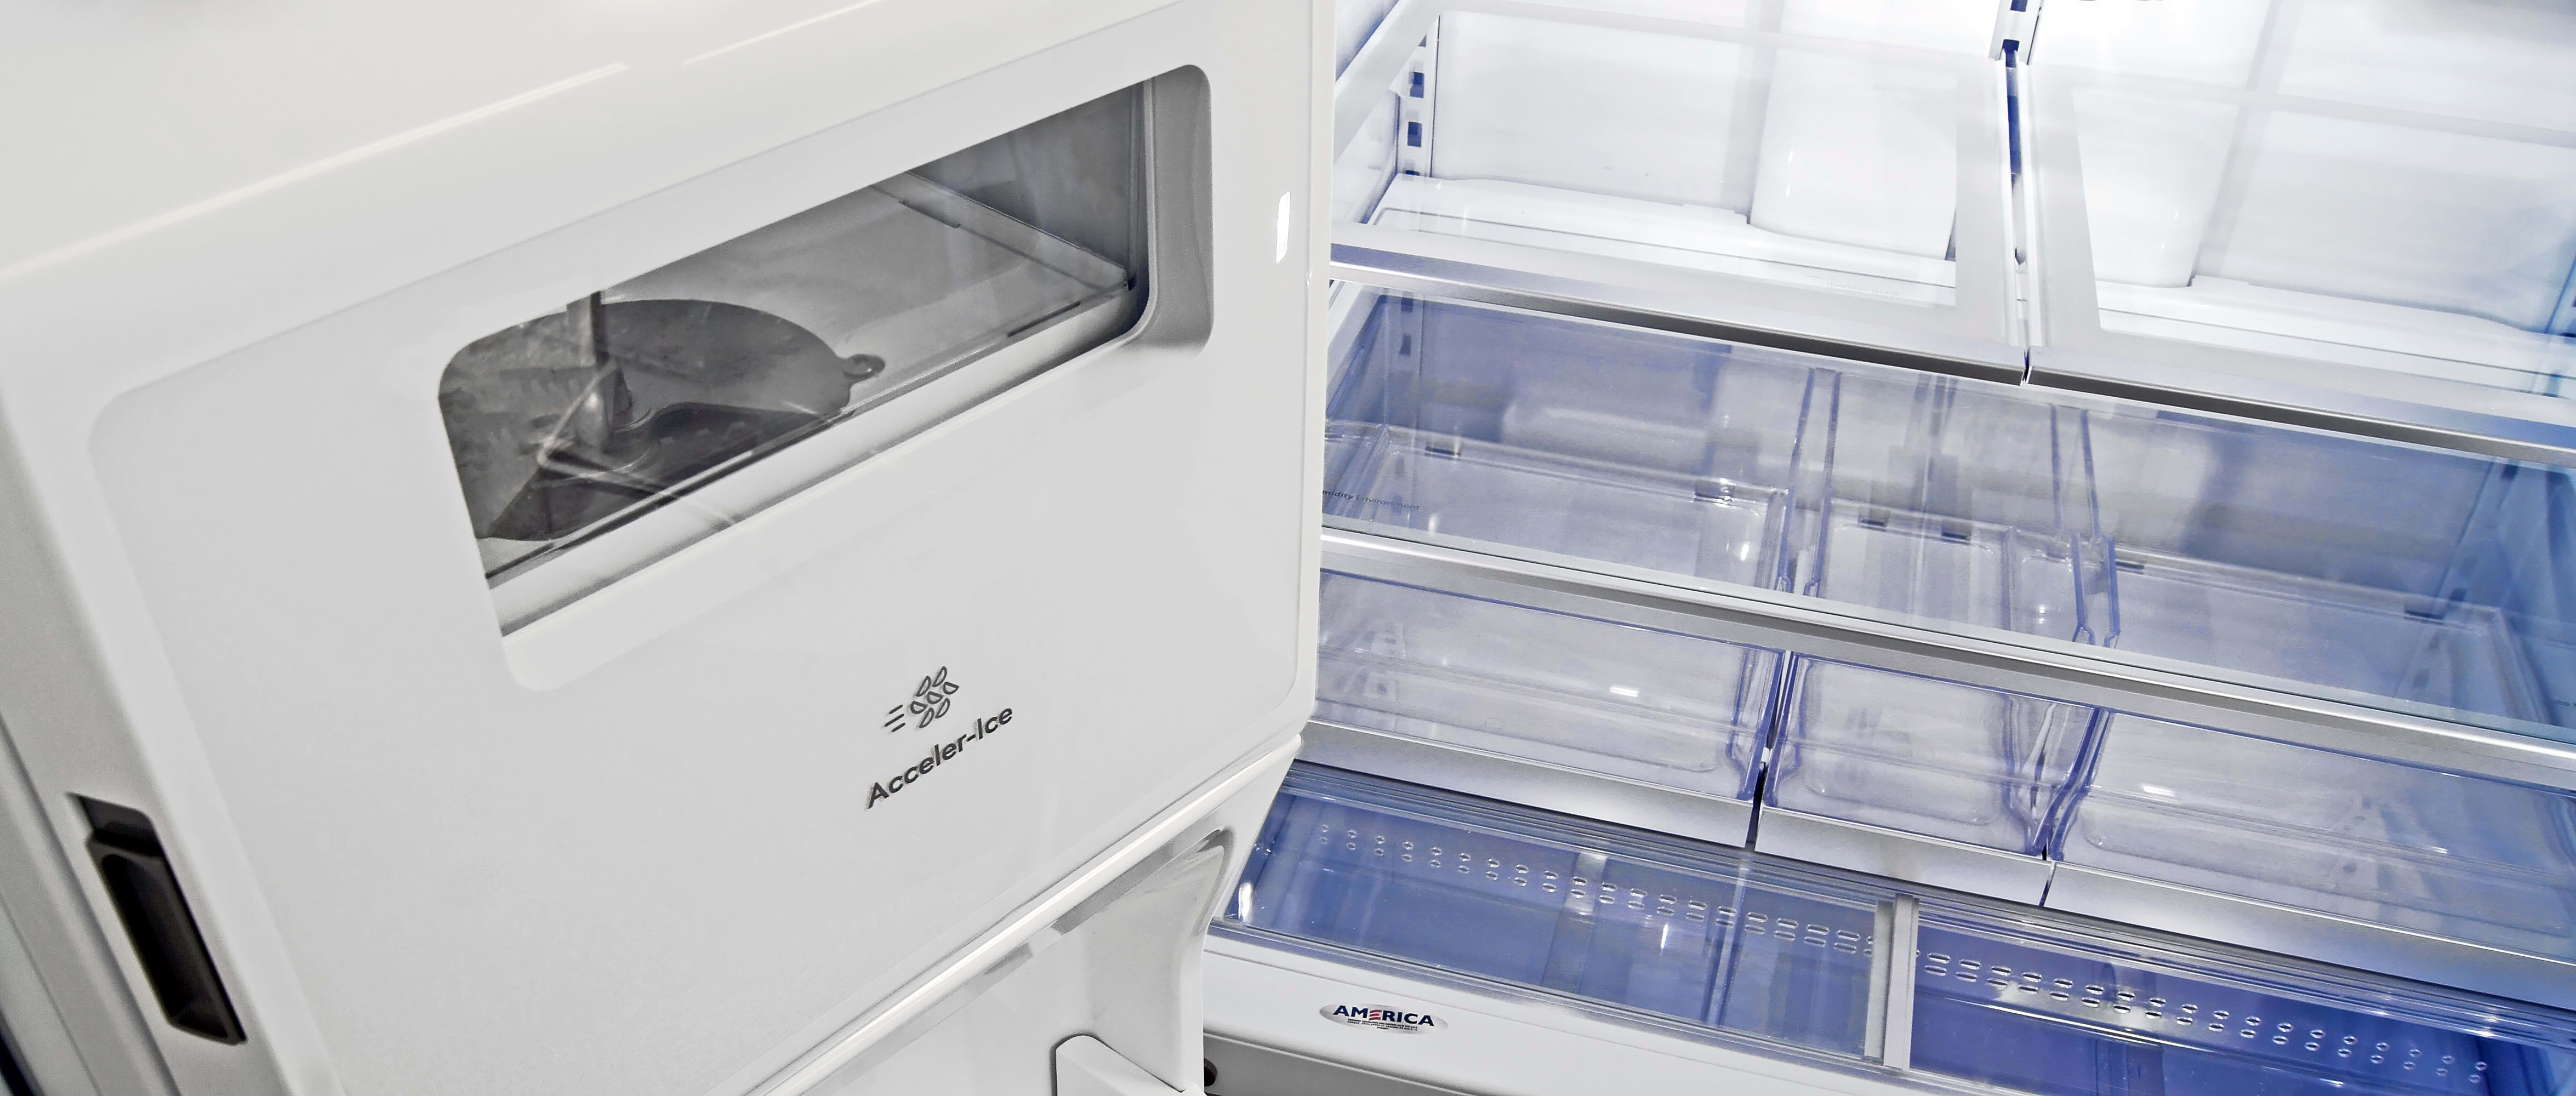 Kenmore 72383 Refrigerator Review Refrigerators